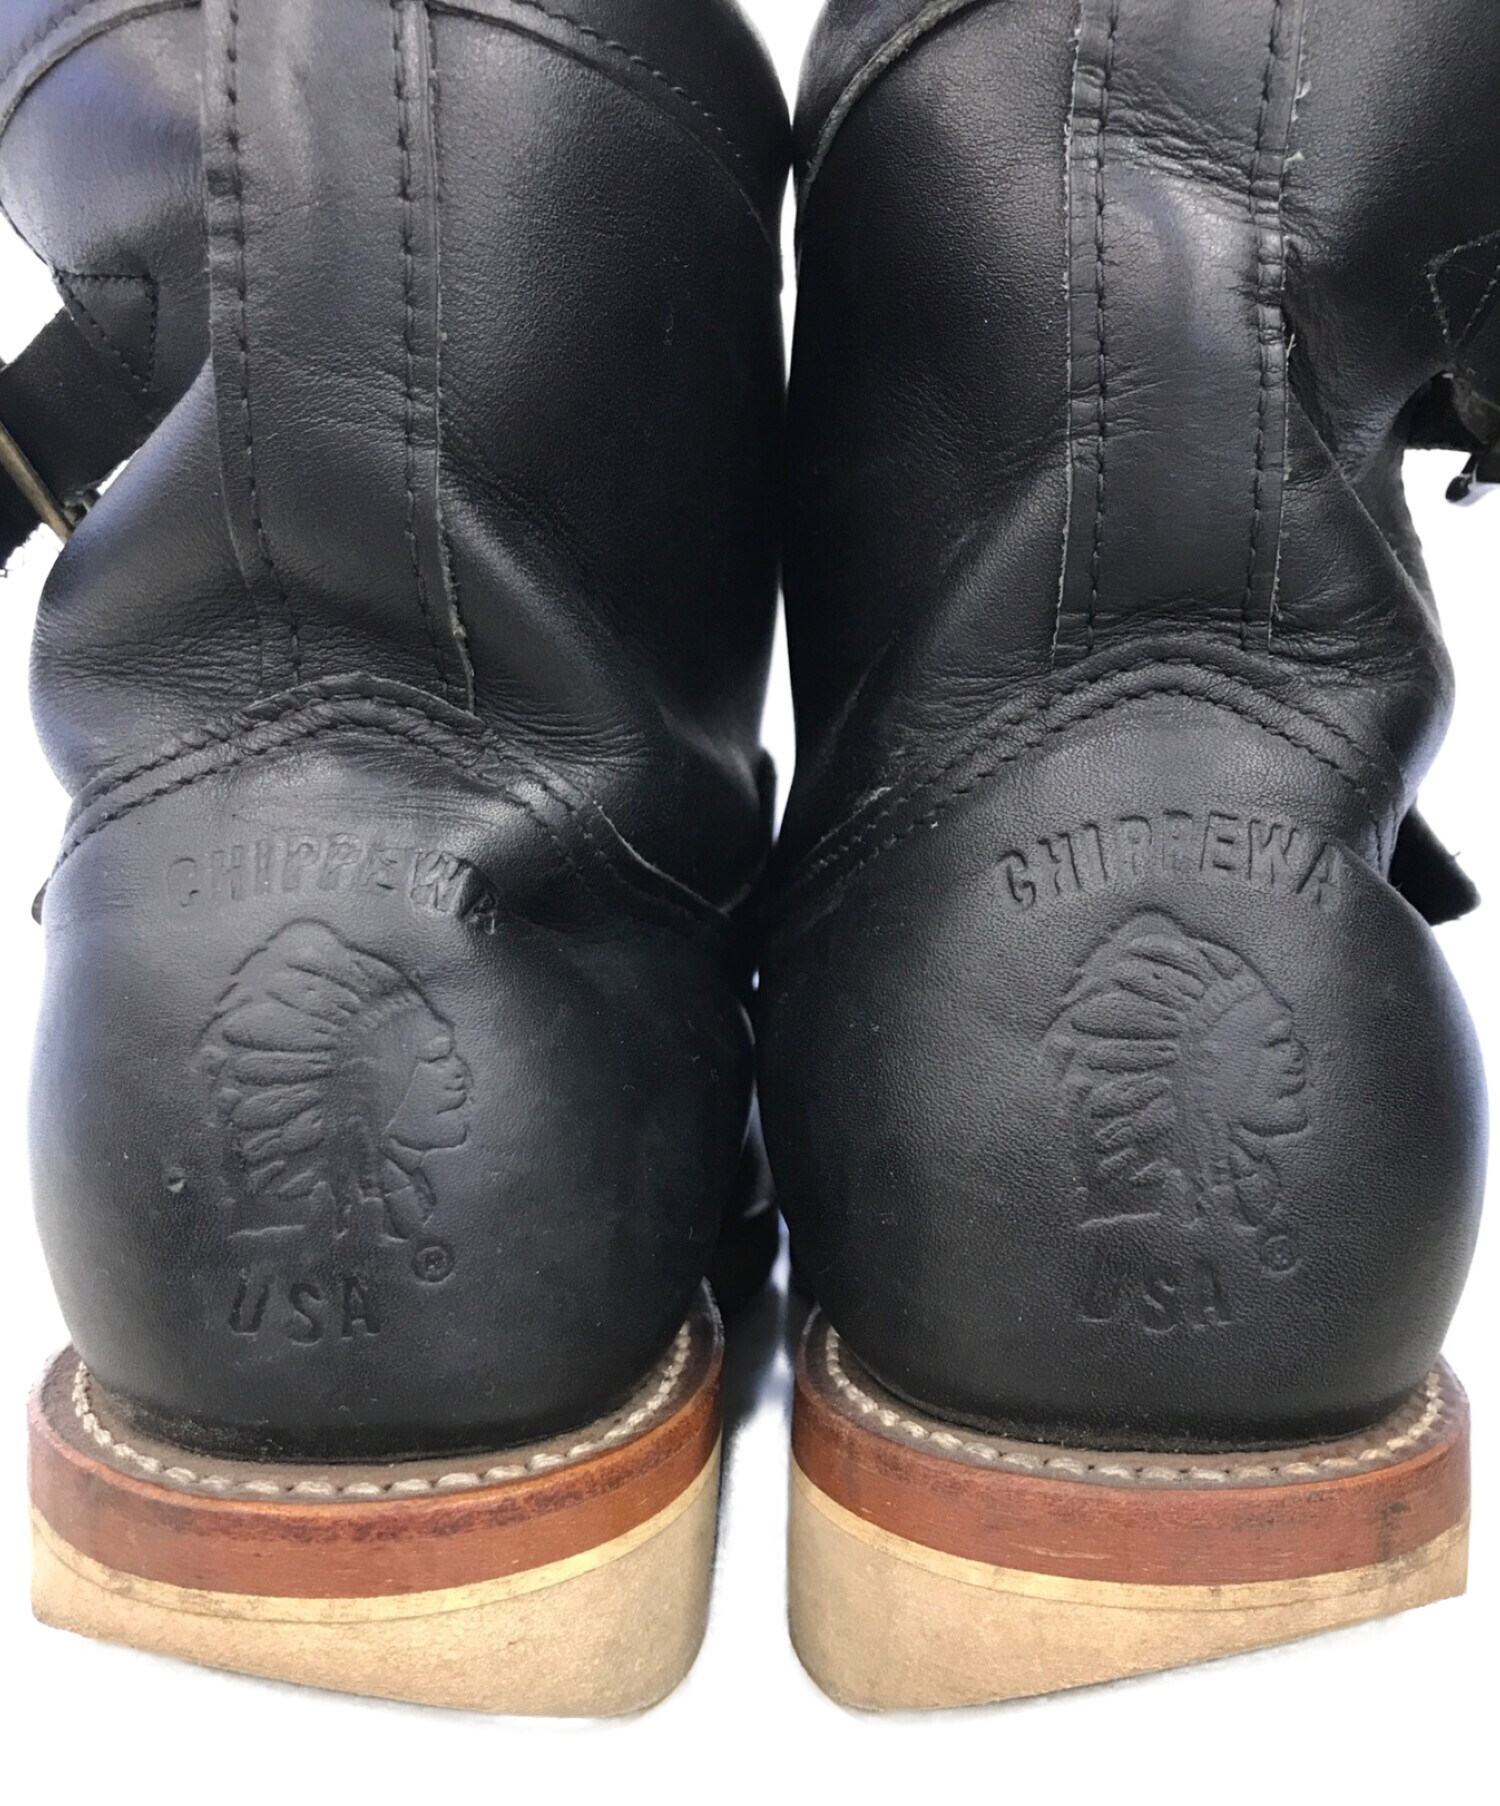 【通常価格】USA製 Chipewa チペワ モックトゥブーツ 黒 7 1/2 E 25.5 靴